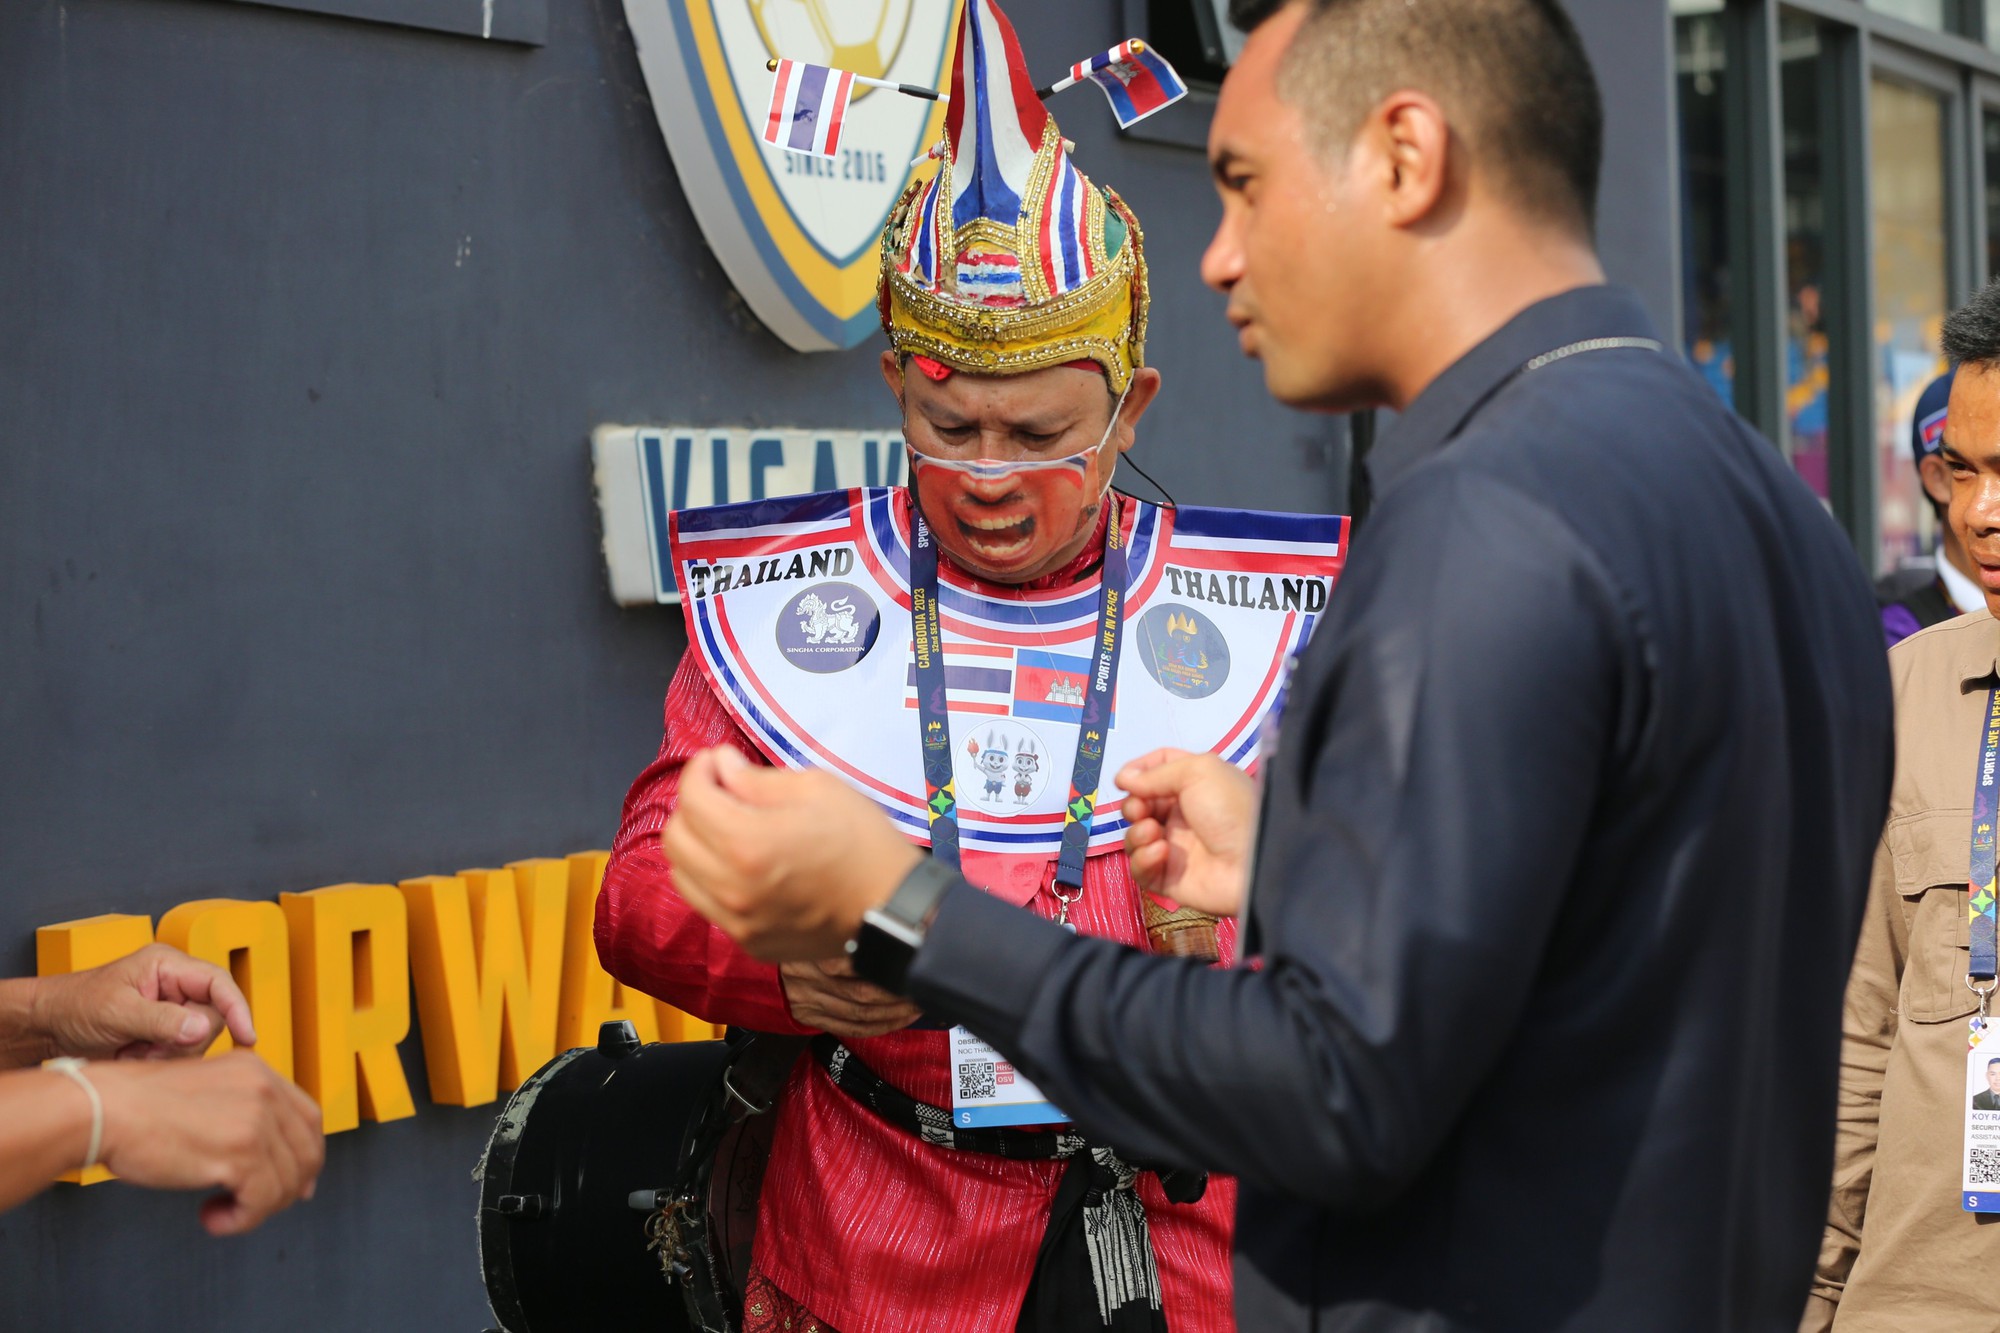 An ninh Campuchia cấm CĐV Thái Lan mang trống vào sân cổ vũ - Ảnh 3.